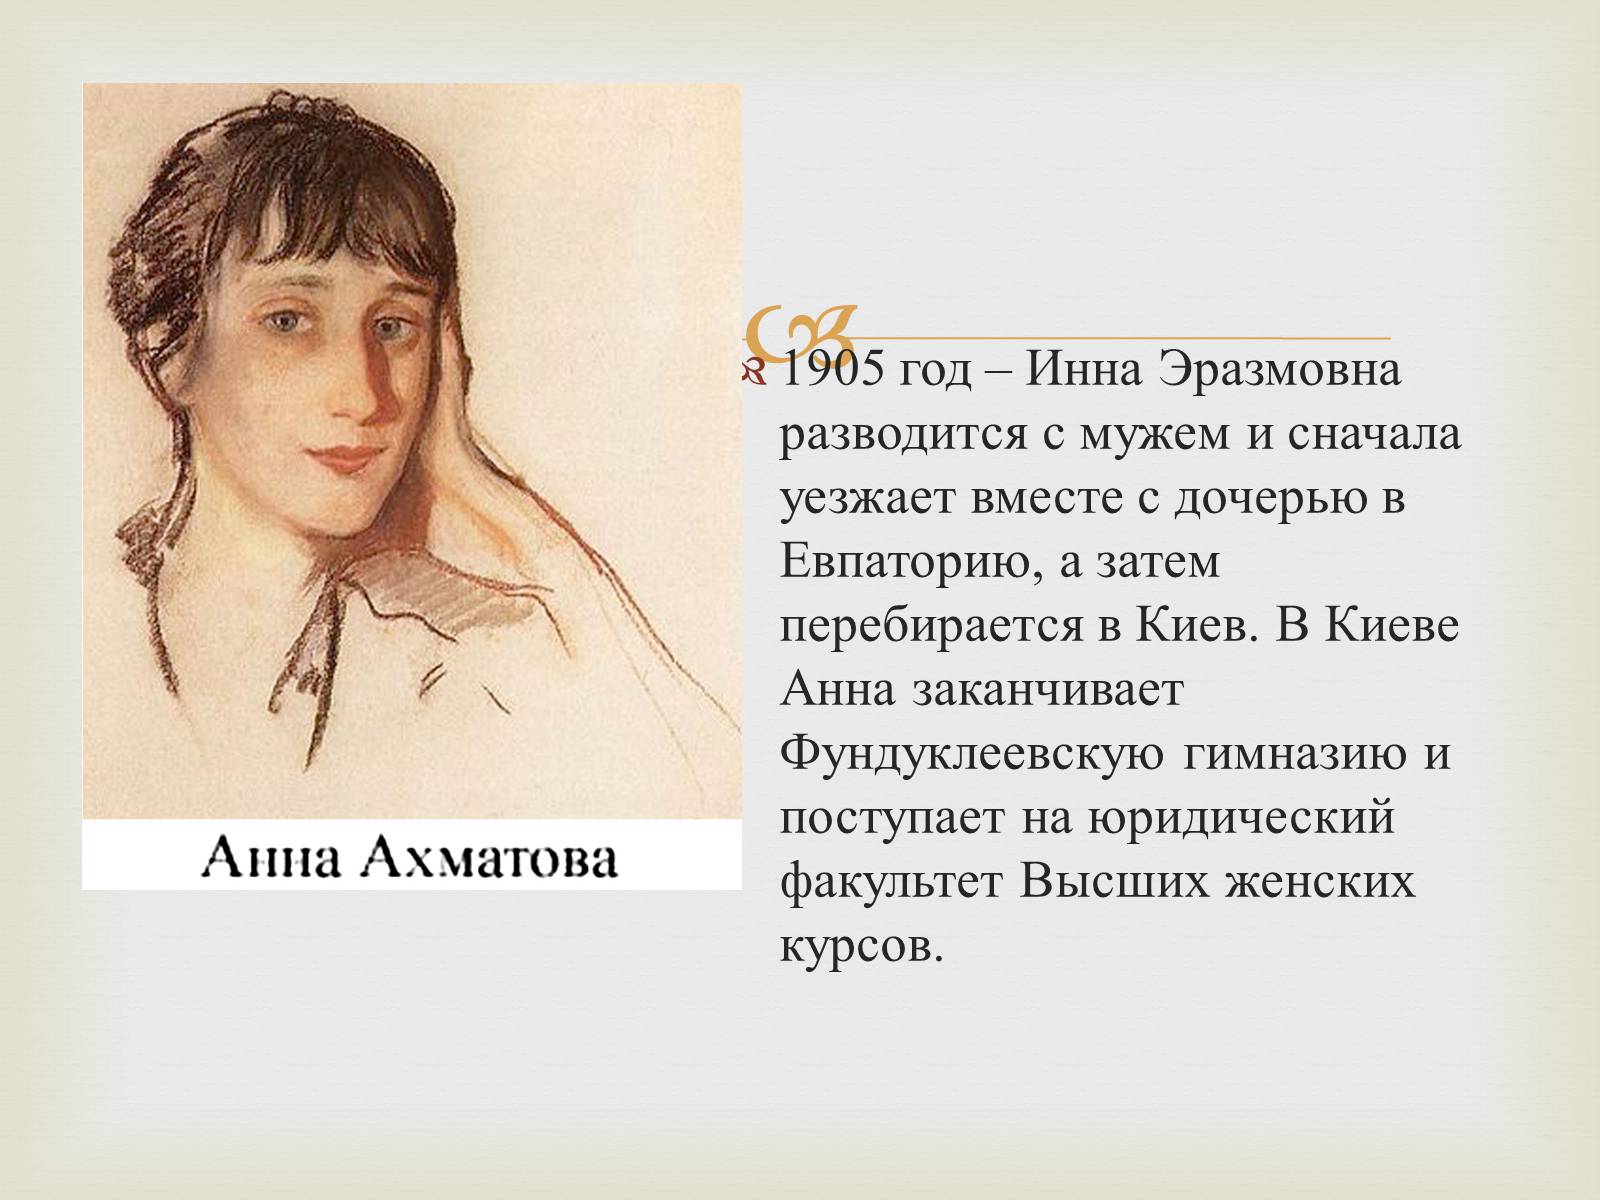 Анна Ахматова 1905